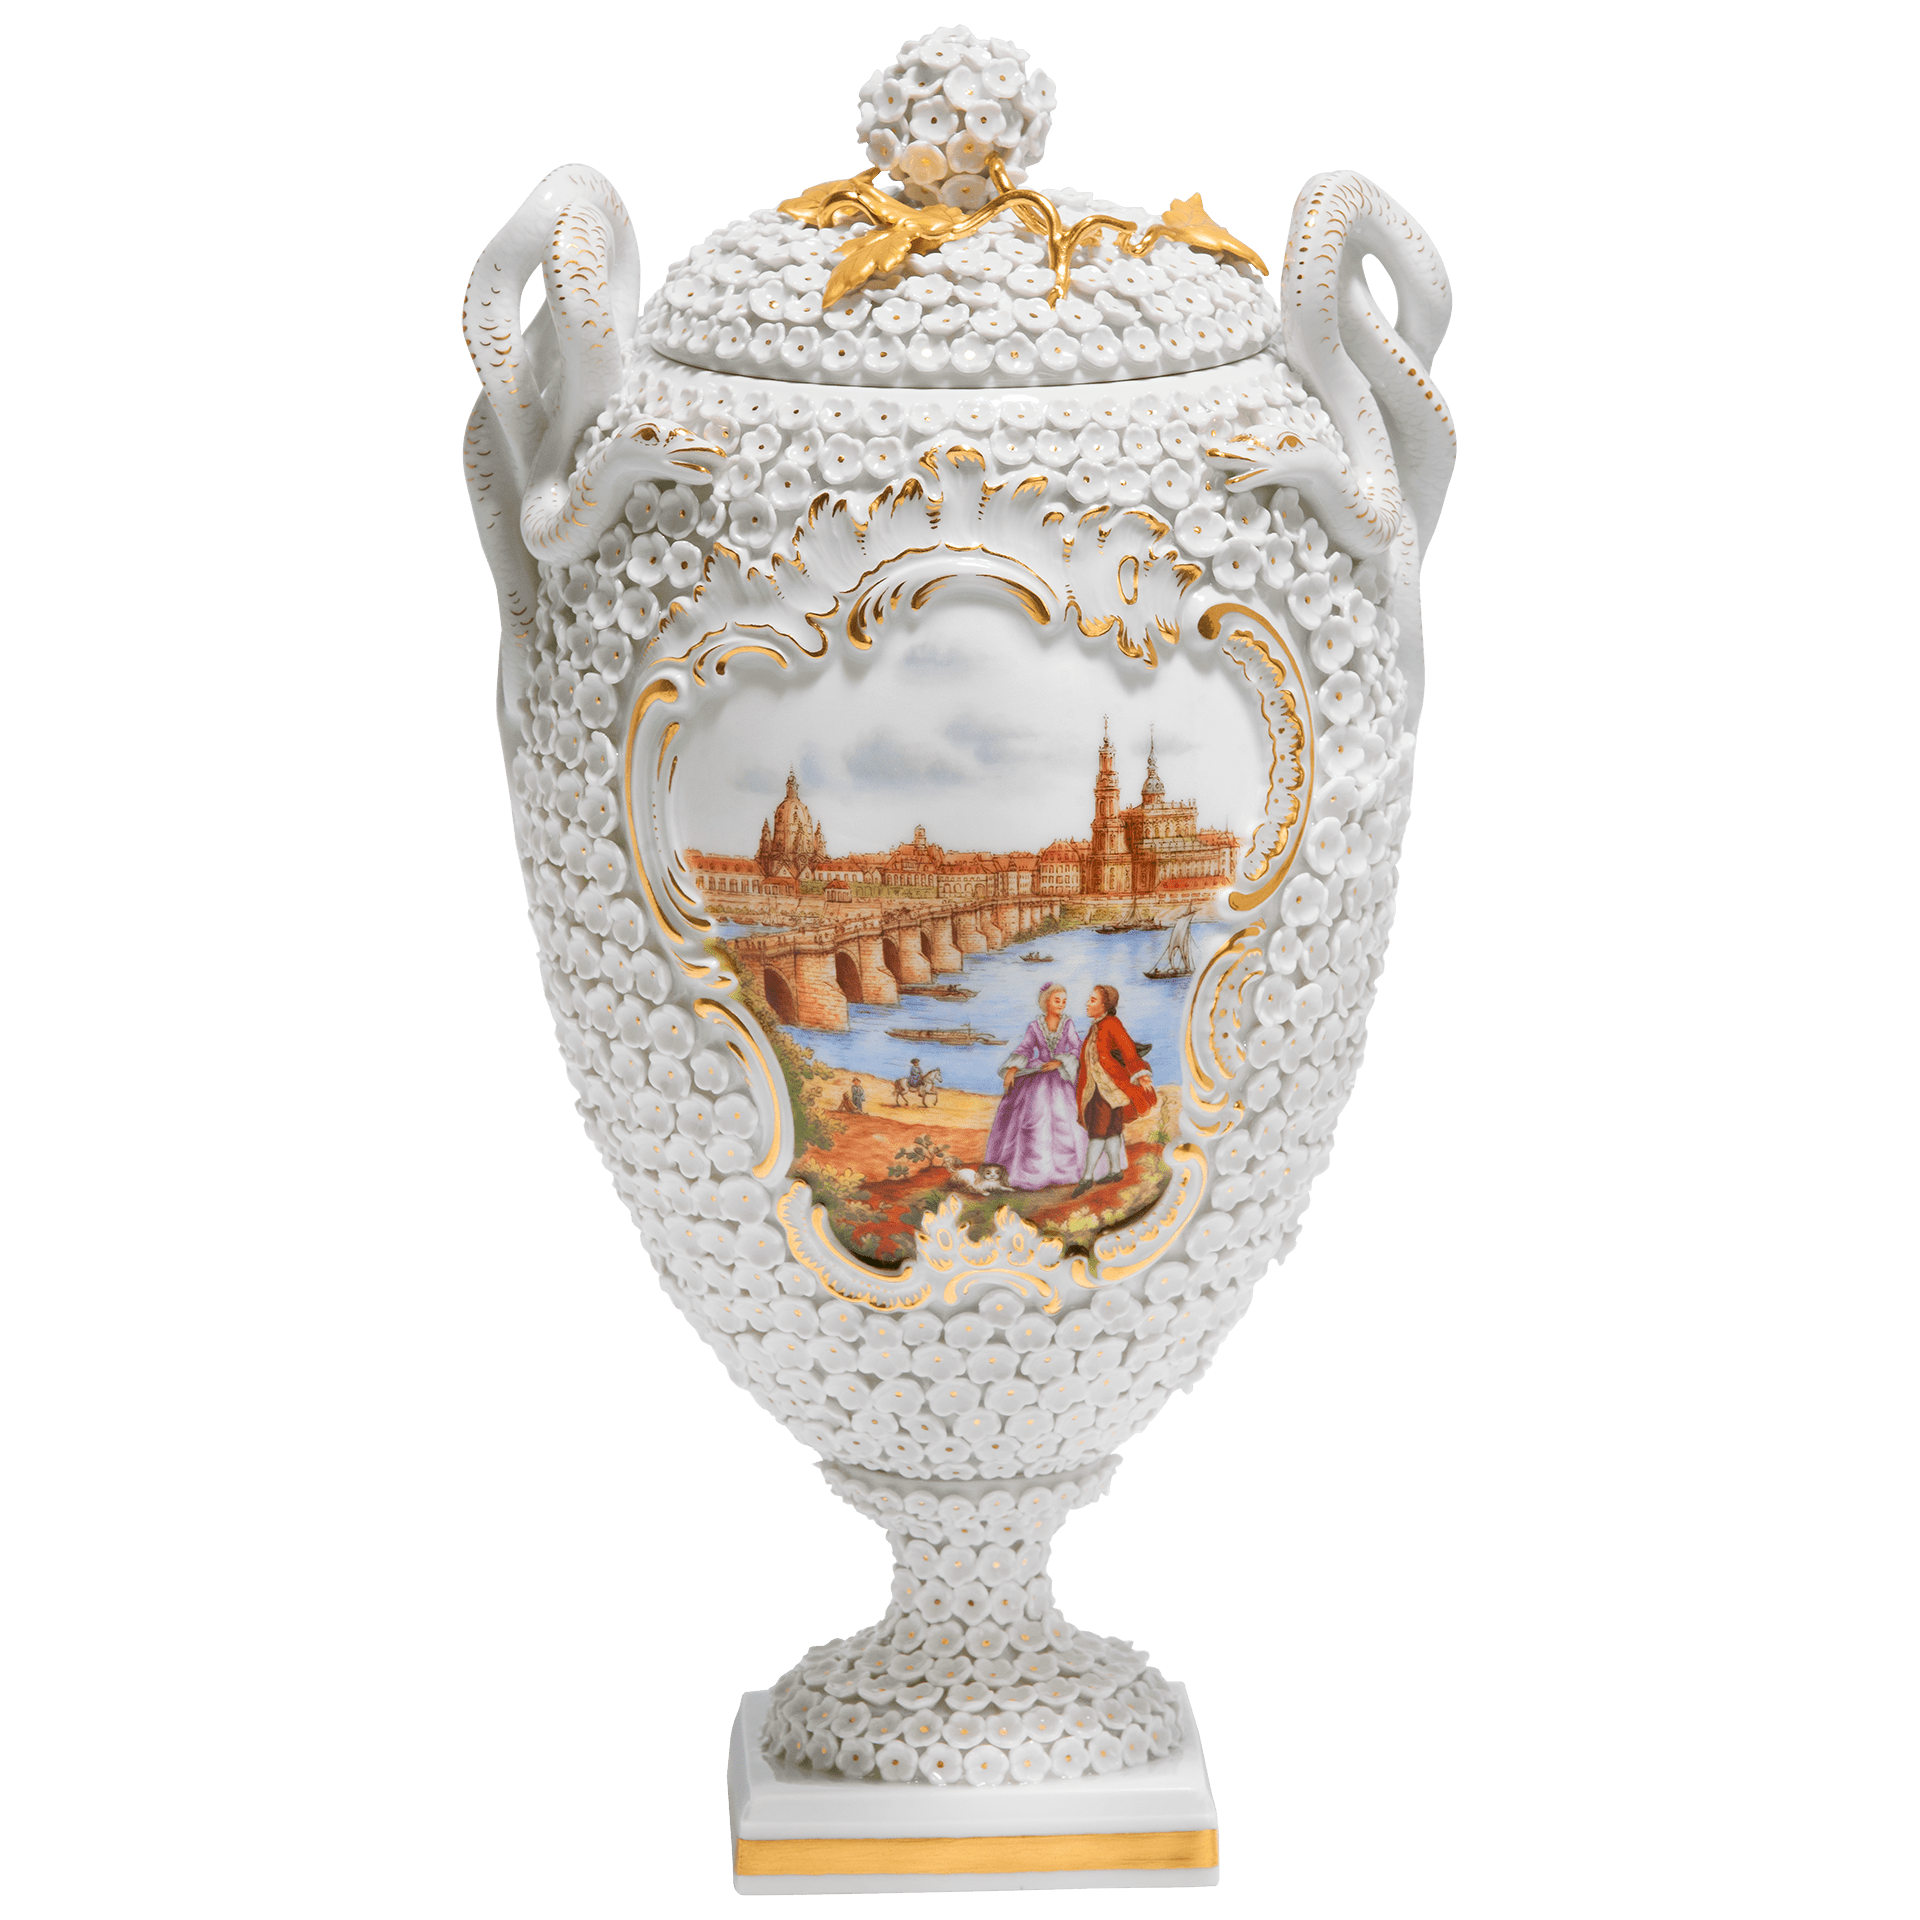 スノーボール装飾花瓶「ドレスデン―カナレットの光景」 82M09/28A884